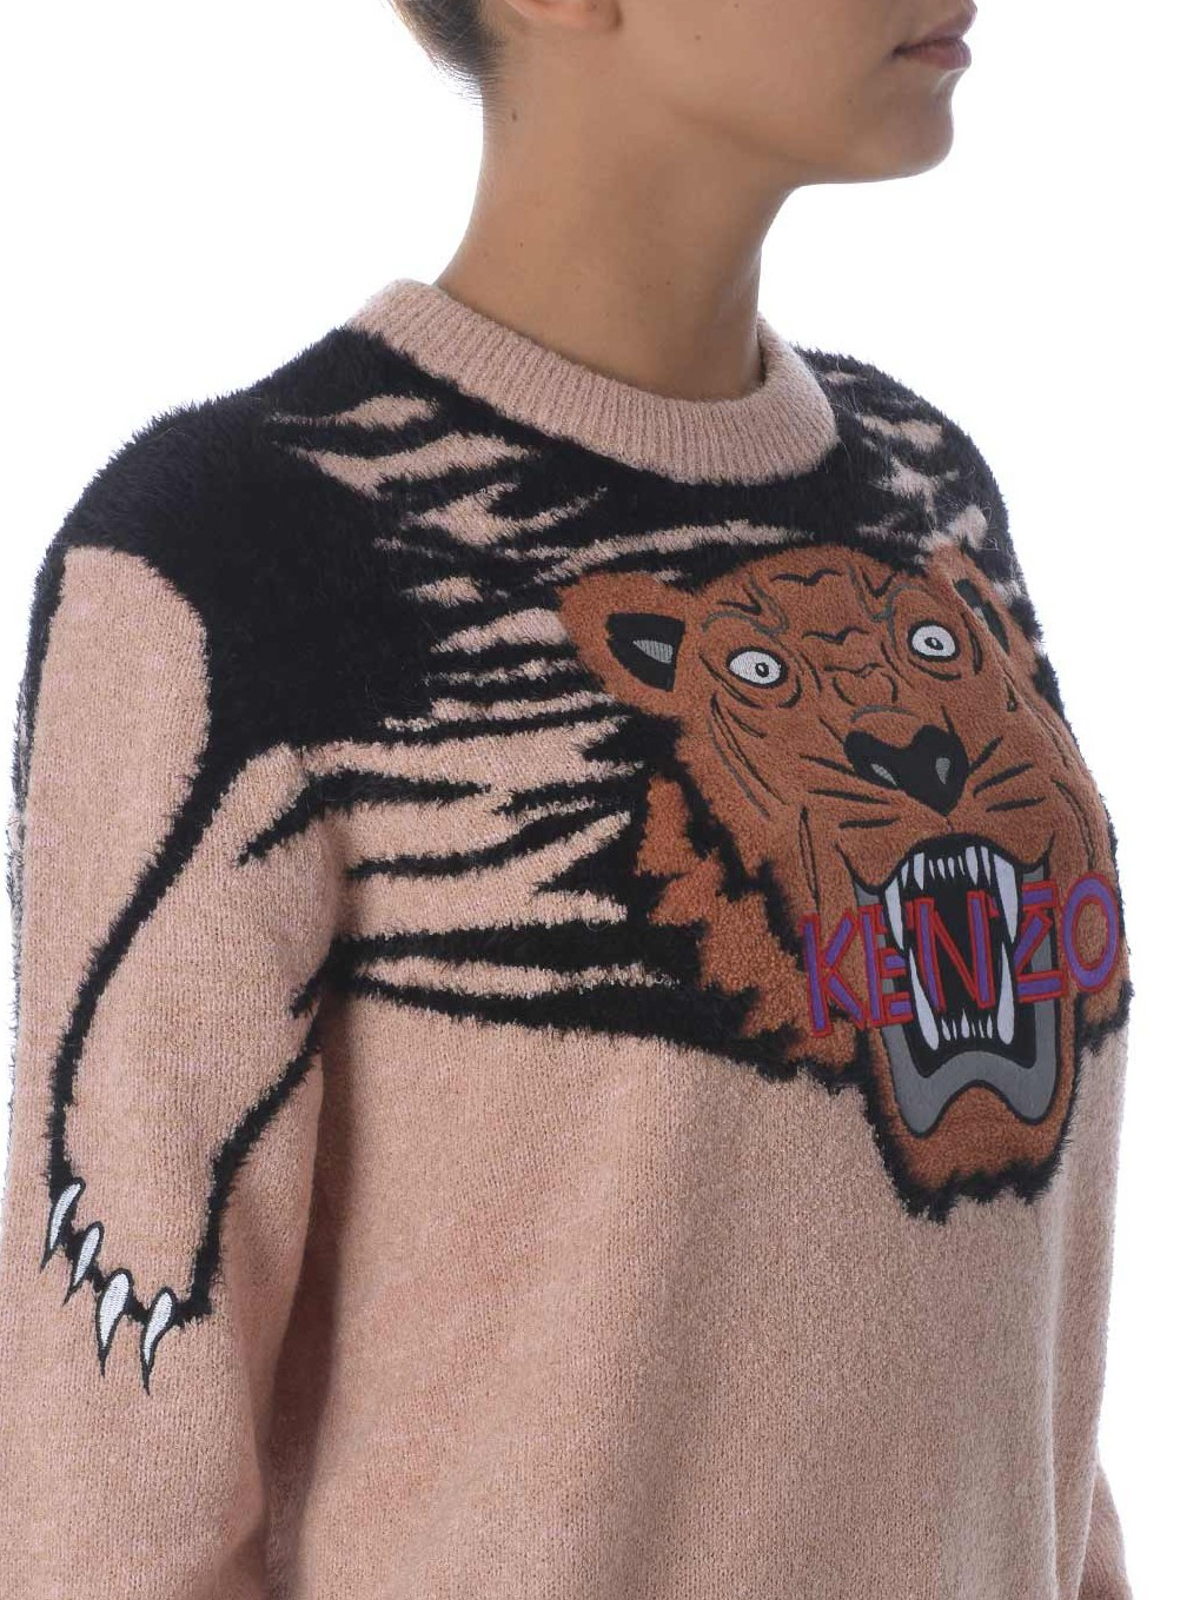 intarsia knit tiger jumper, Kenzo